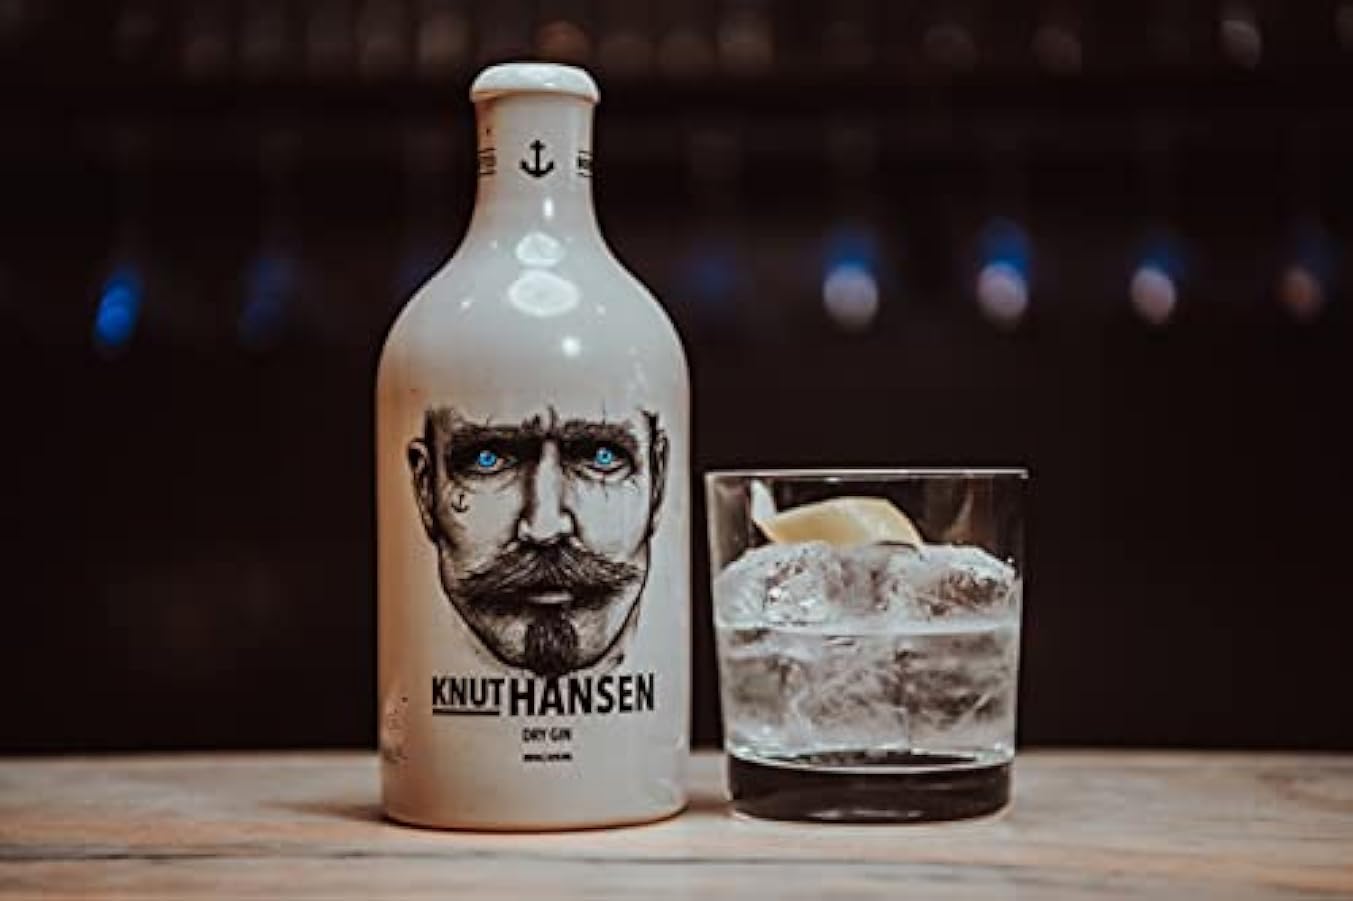 Knut Hansen Dry Gin 42% Vol 0.5 l in Confezione Regalo con Keramiktasse 184574930